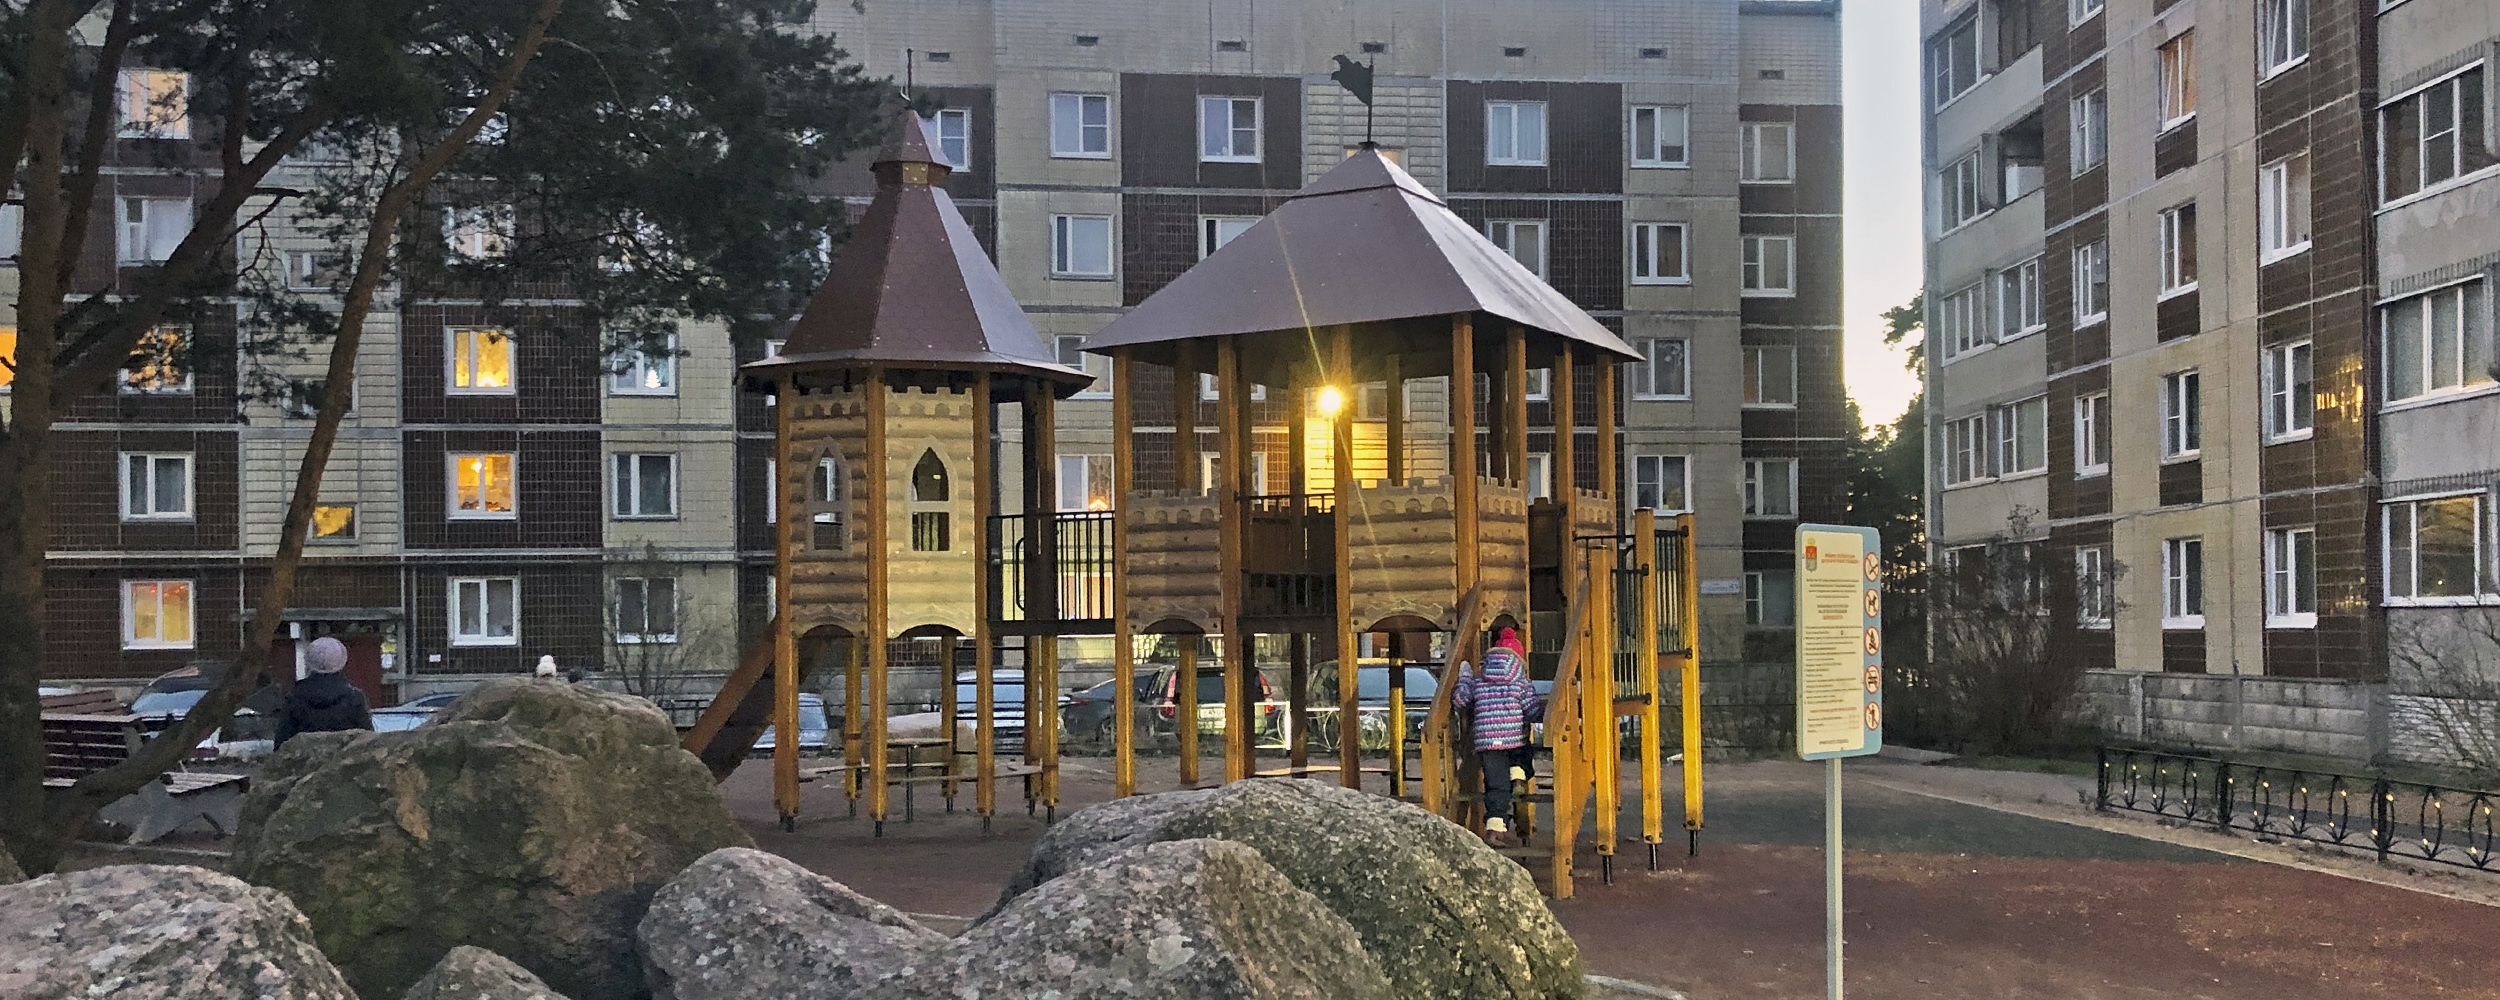 Детские площадки в стиле "Крепость"